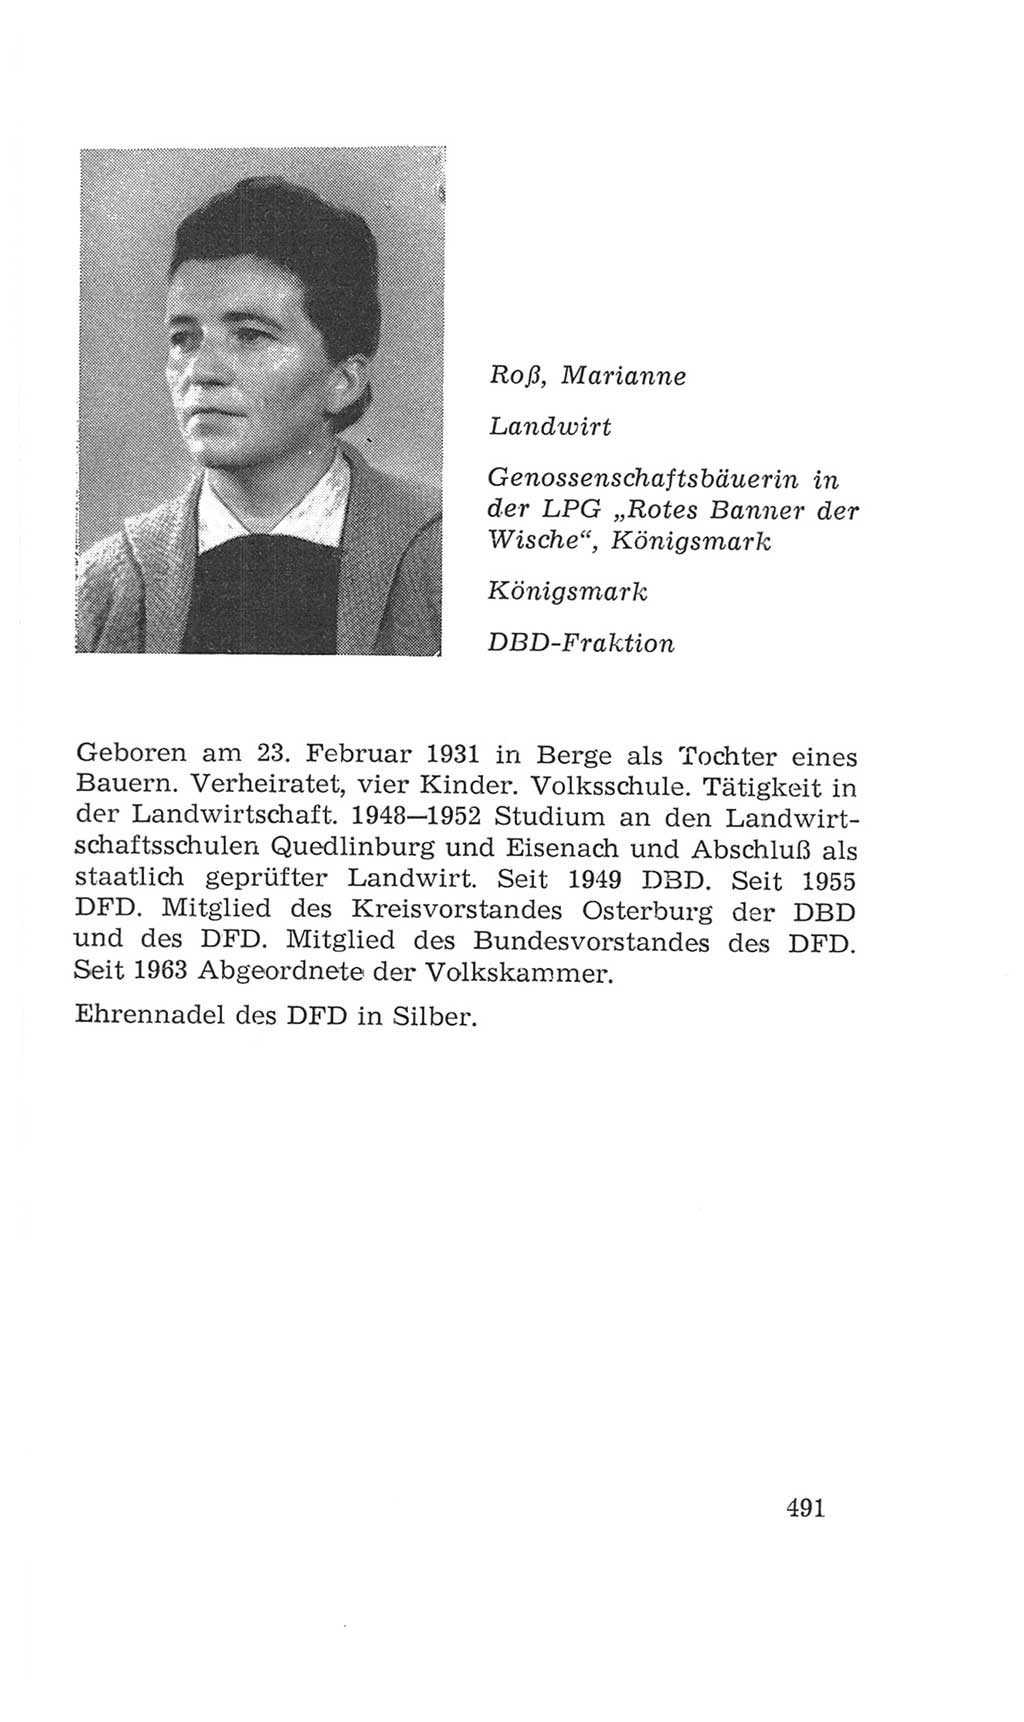 Volkskammer (VK) der Deutschen Demokratischen Republik (DDR), 4. Wahlperiode 1963-1967, Seite 491 (VK. DDR 4. WP. 1963-1967, S. 491)